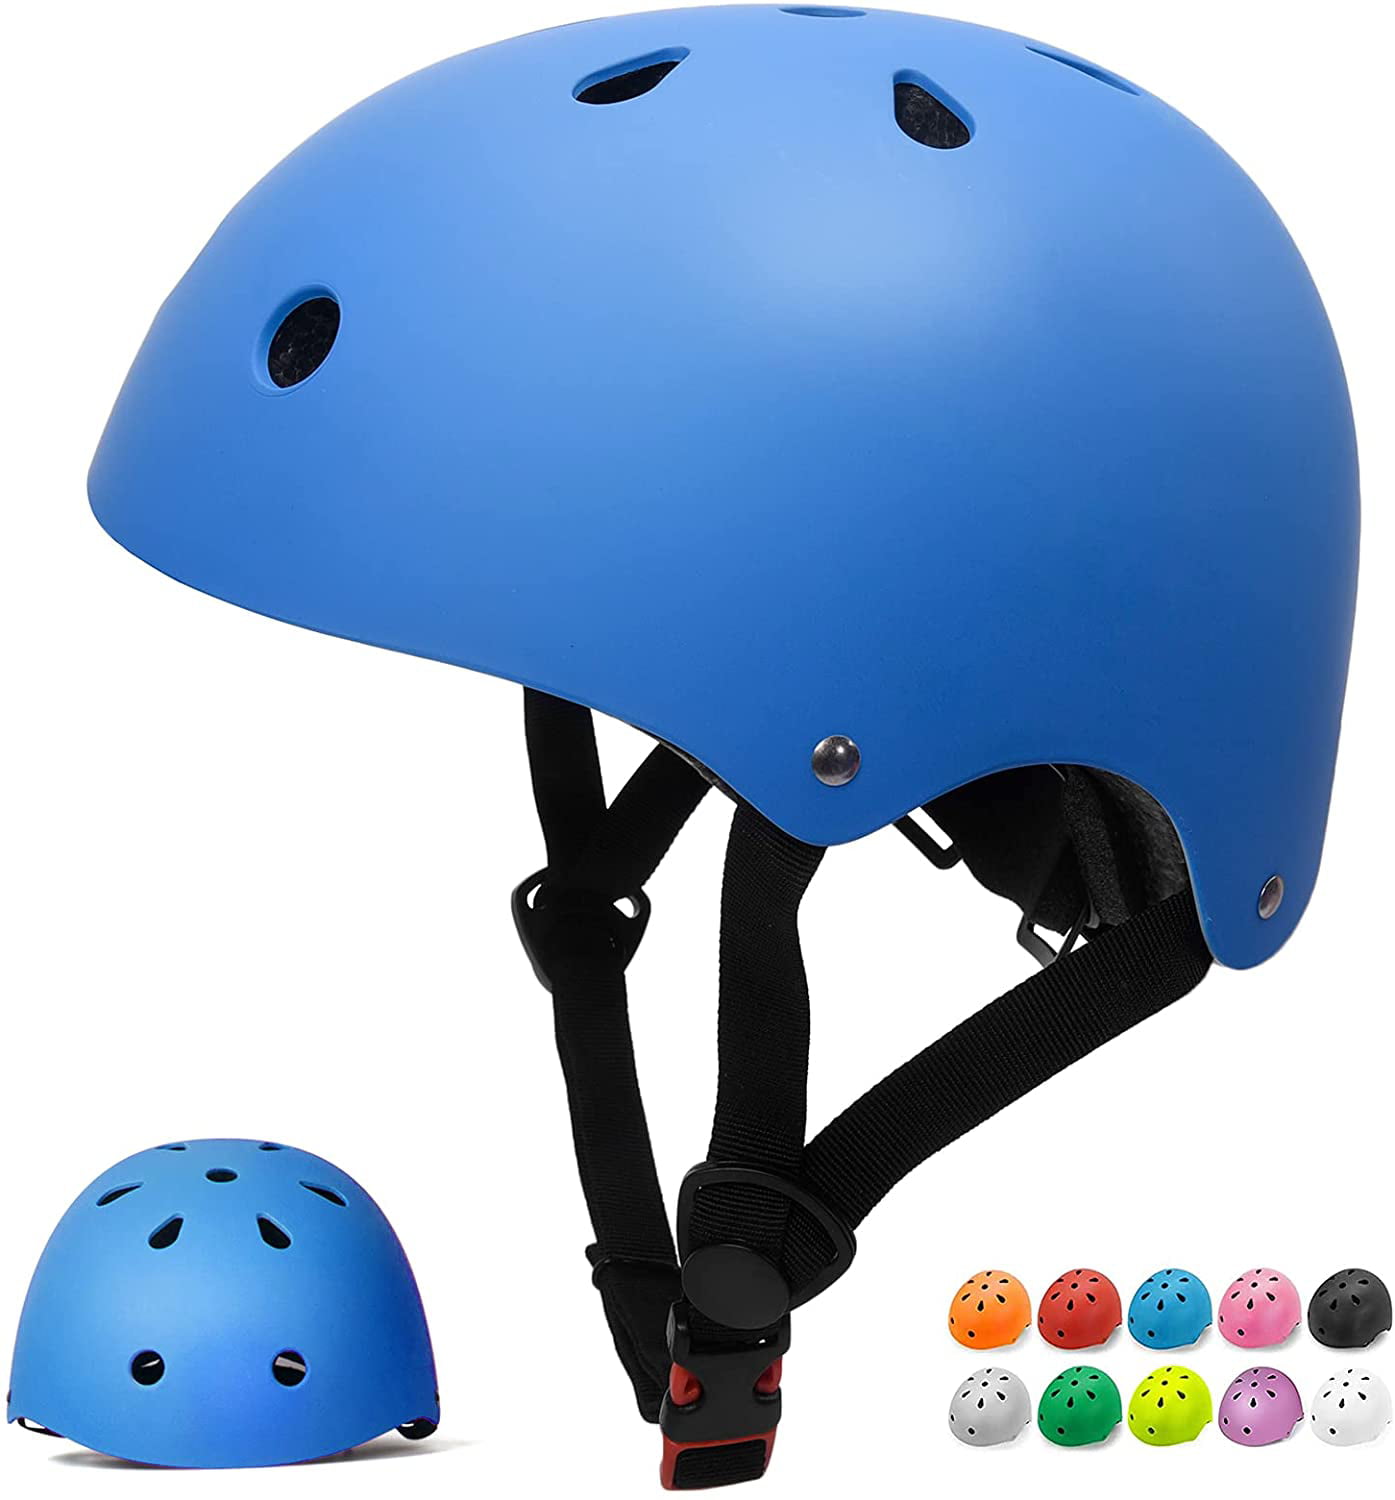 Cowboys Kids Girls Toddlers Boys Bike Cycle Scoot Helmet Blue 48-54cm Adjustable 